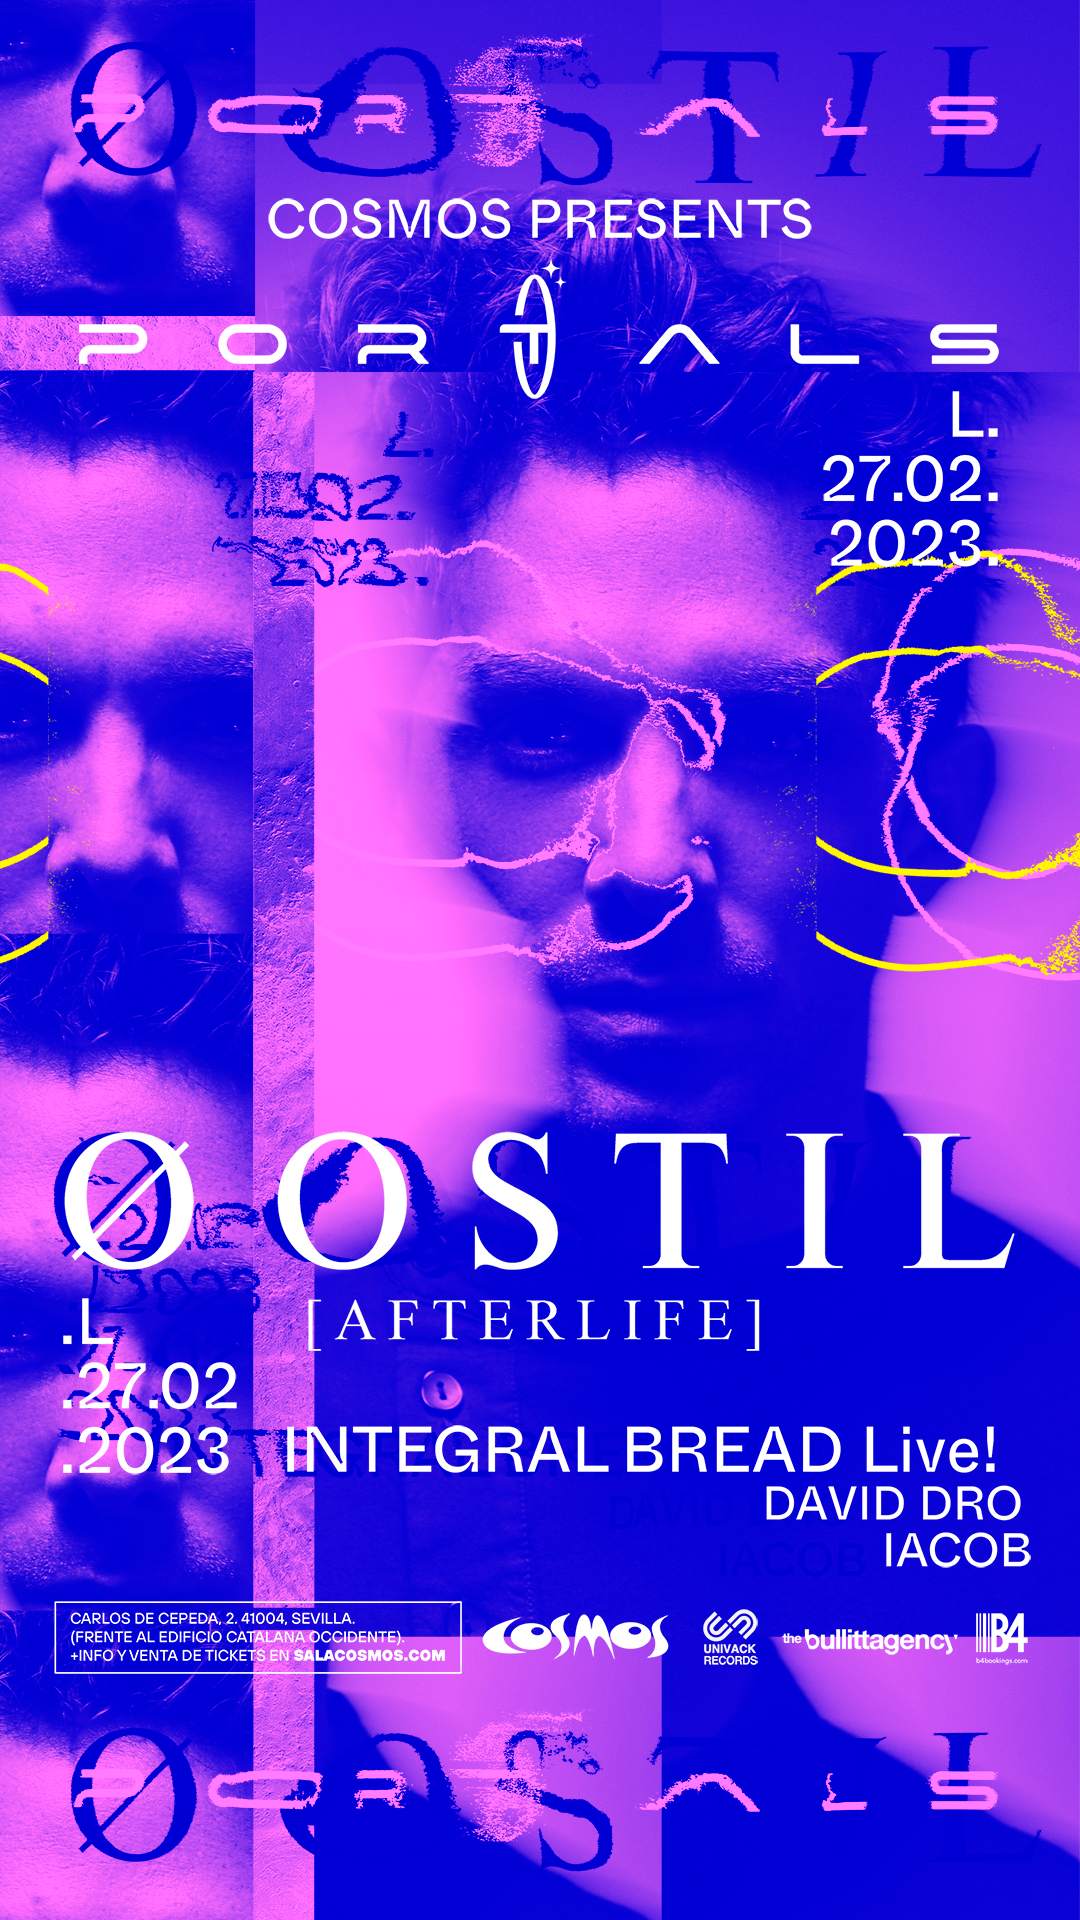 Øostil (Afterlife) at Cosmos - フライヤー表